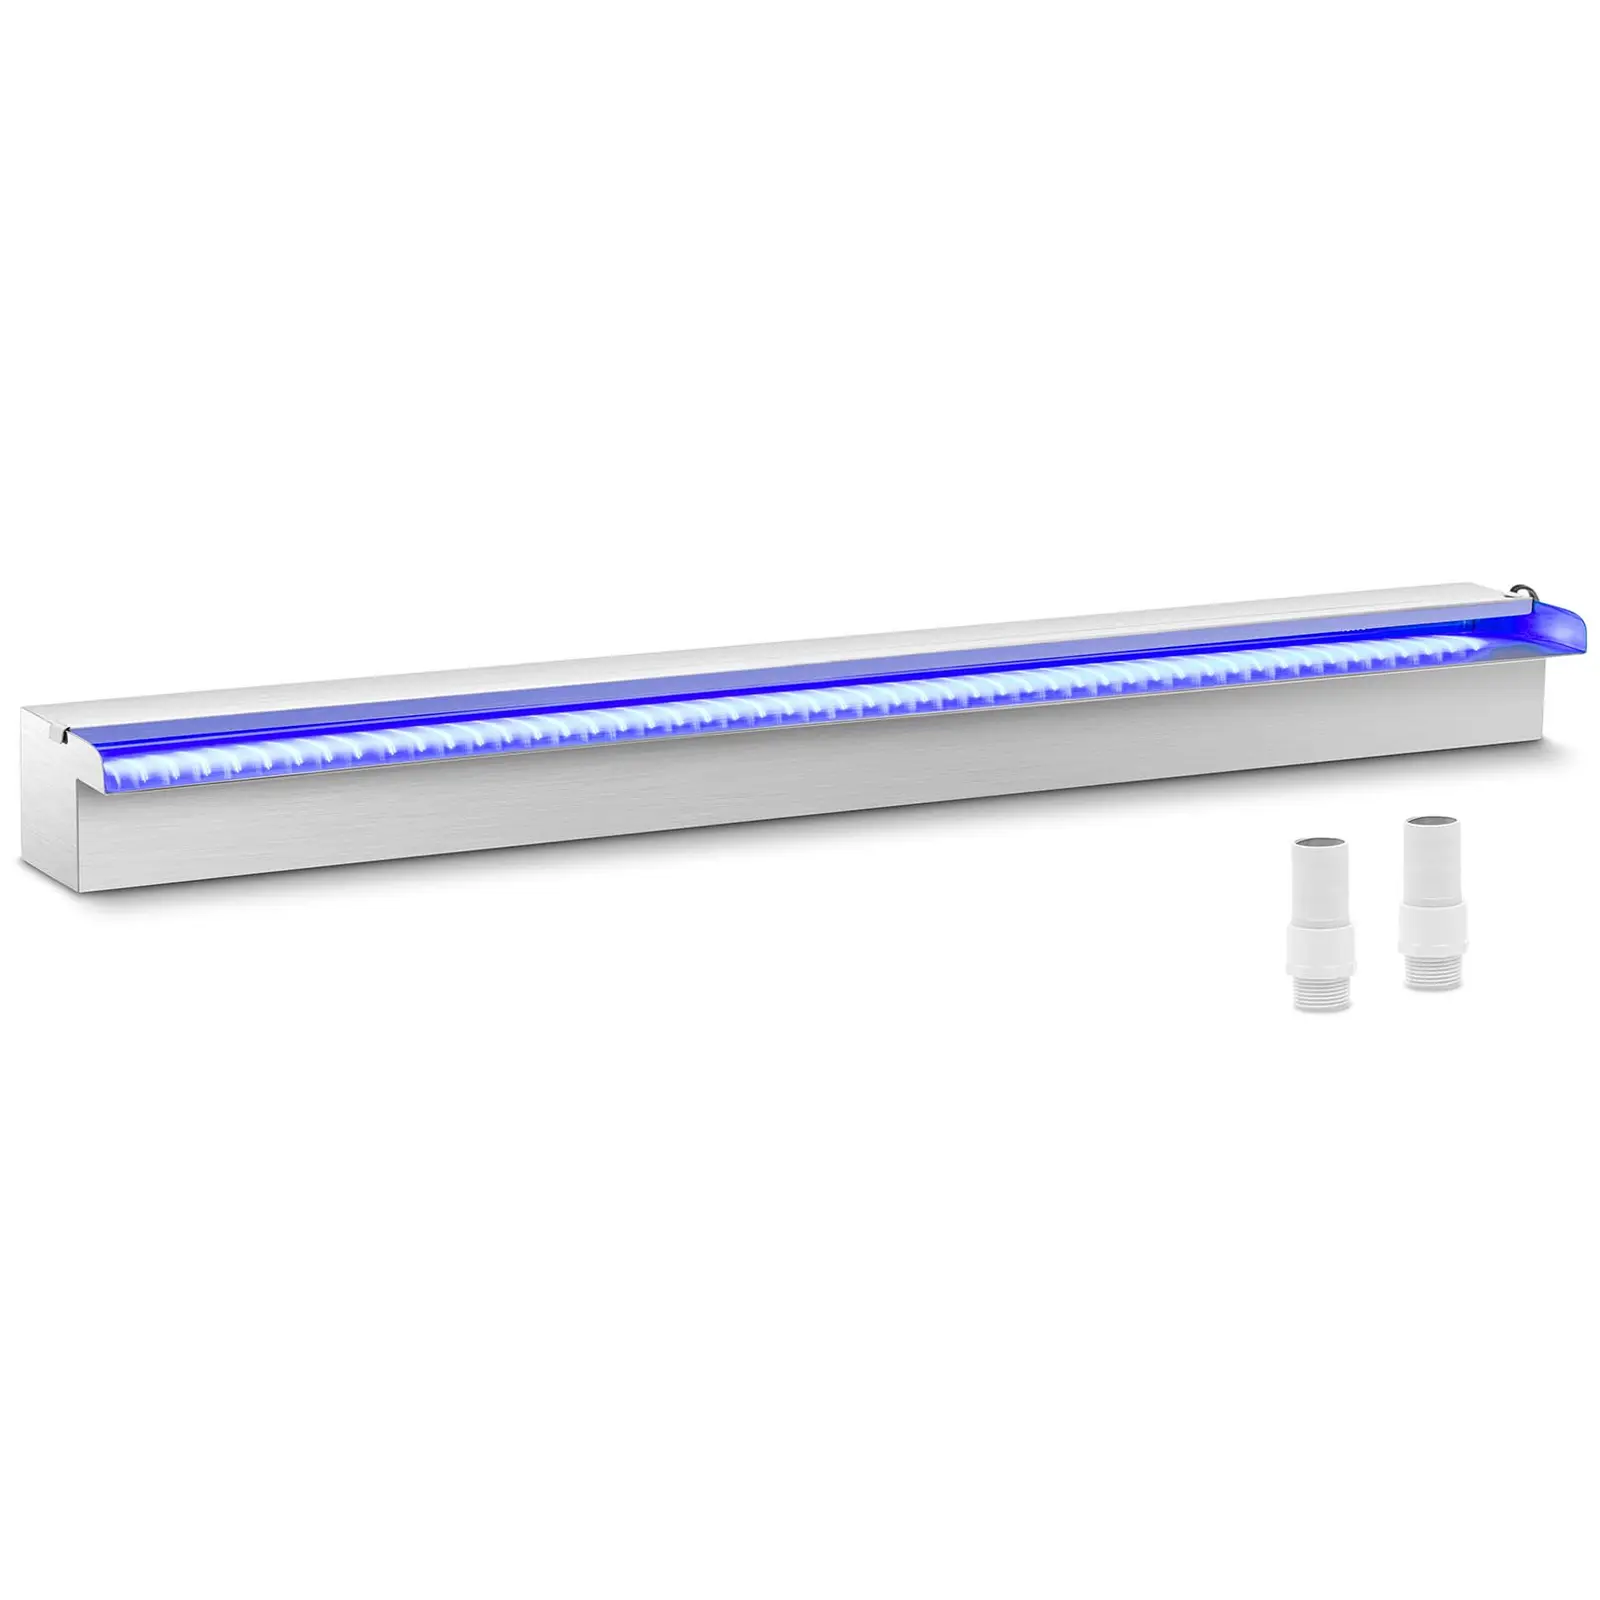 Силен душ - {{net_length}} cm - LED осветление - Синьо / Бяло